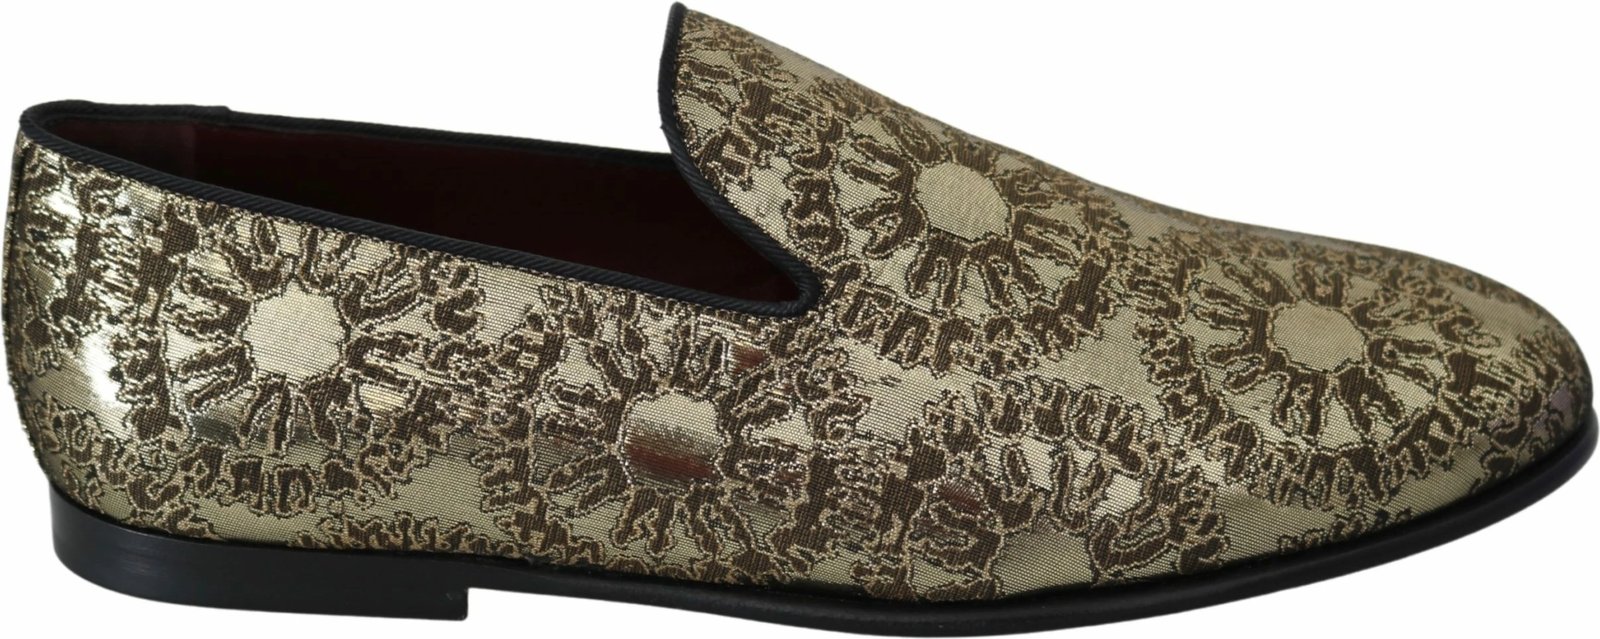 Këpucë për meshkuj Dolce & Gabbana, ari 